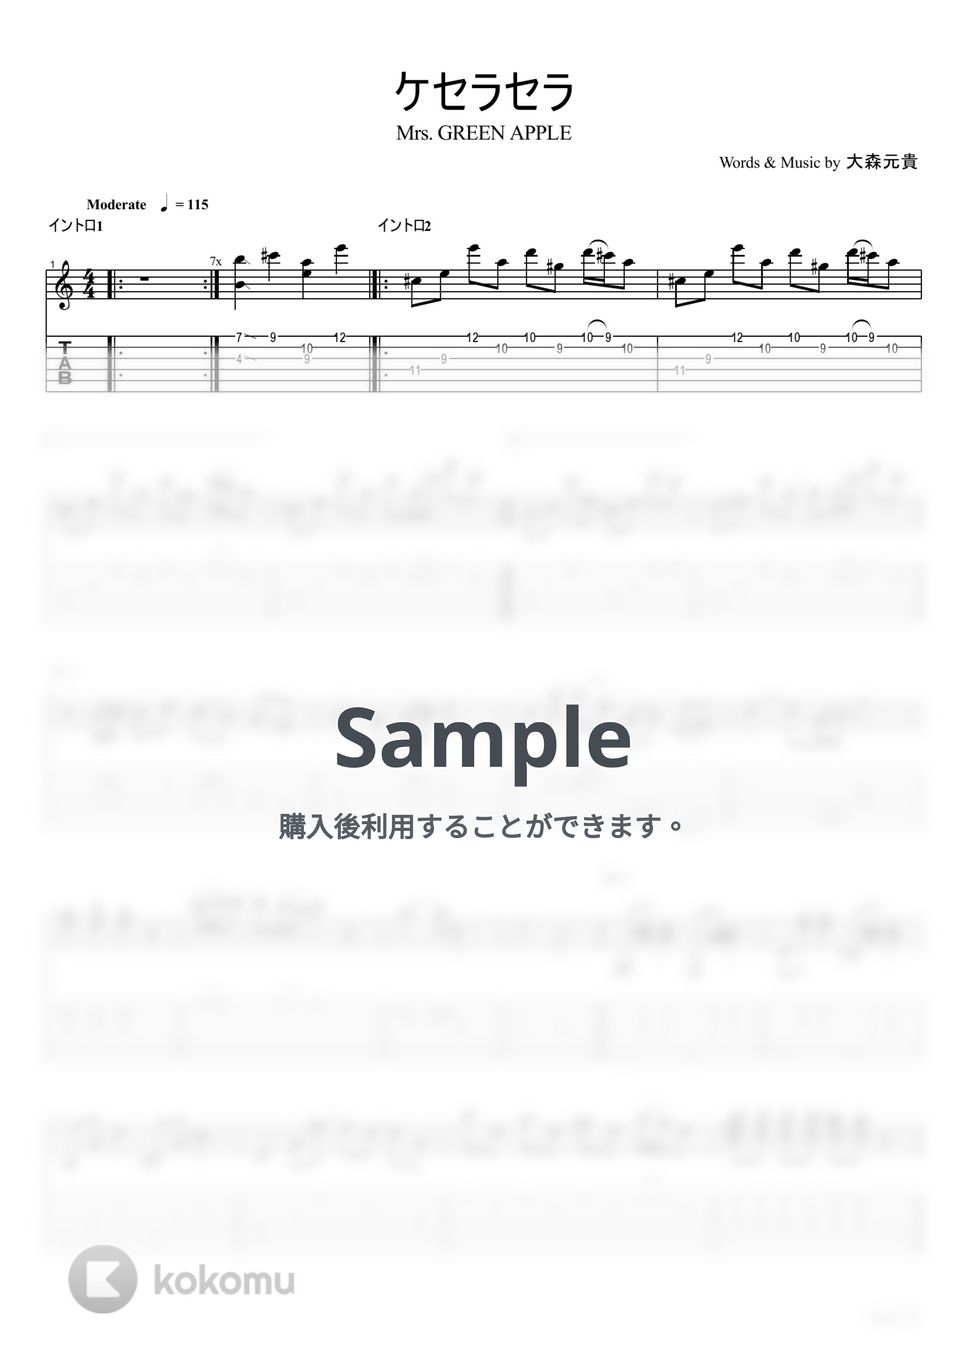 Mrs.GREEN APPLE - ケセラセラ【ギターTAB / リードパート】 by はちみつヨーグルト